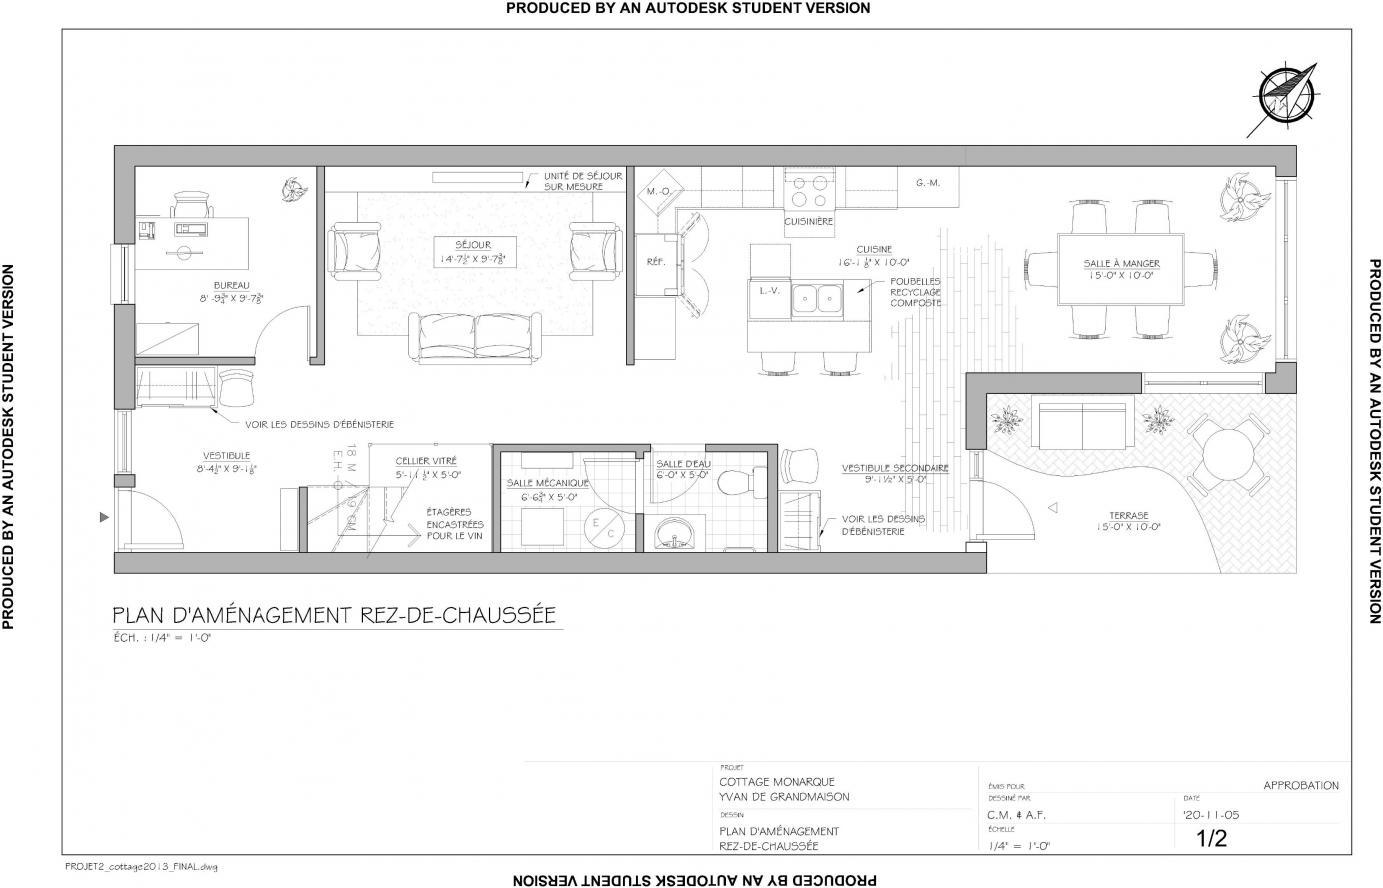 PROJET 2 : Cottage le Monarque - Conversion d’un duplex en cottage —1 968 pi². L’aménagement à aire ouverte est axé sur les rencontres entre amis. Présence d’un bureau près de l’entrée principale afin de faciliter les échanges avec les clients.